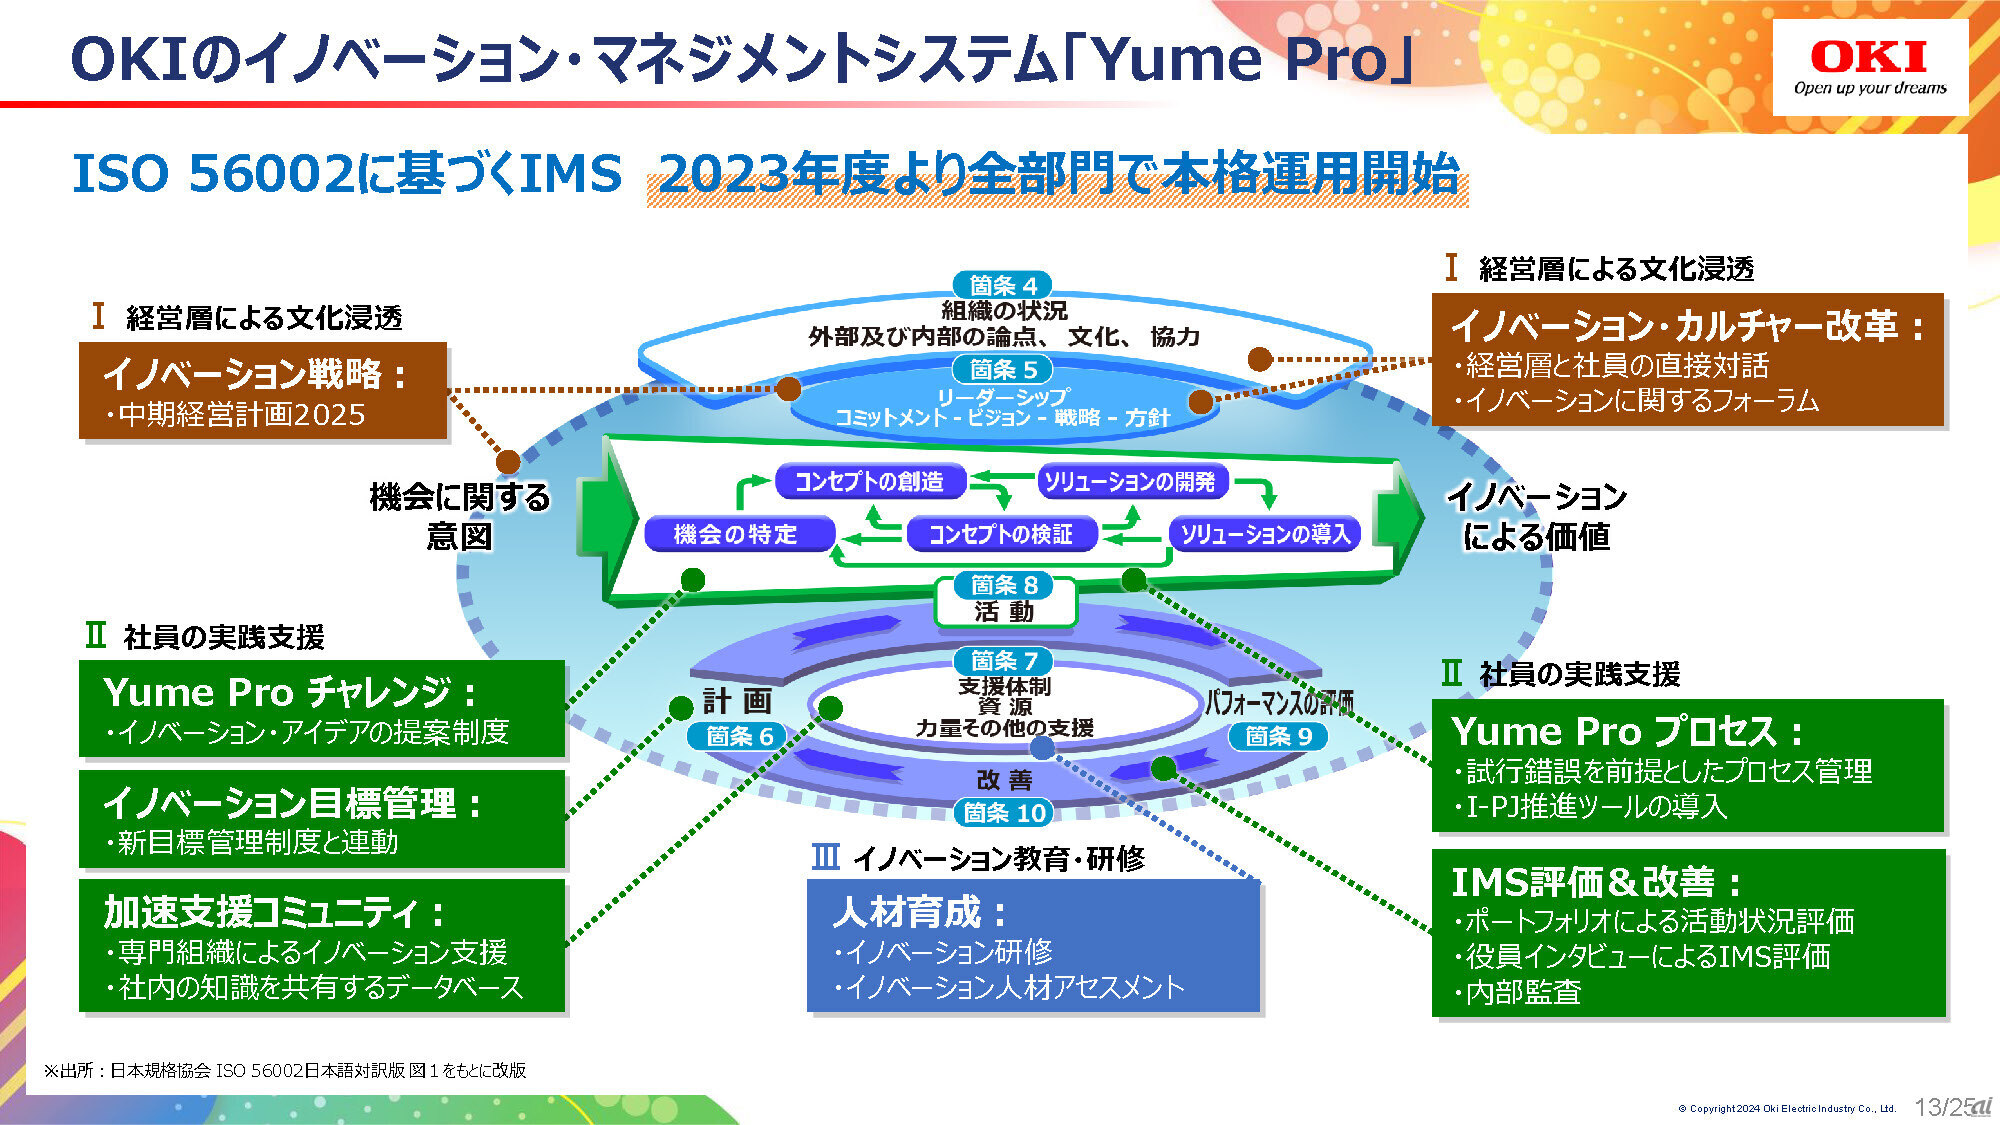 OKIが取り組んでいるIMSである「Yume Pro」